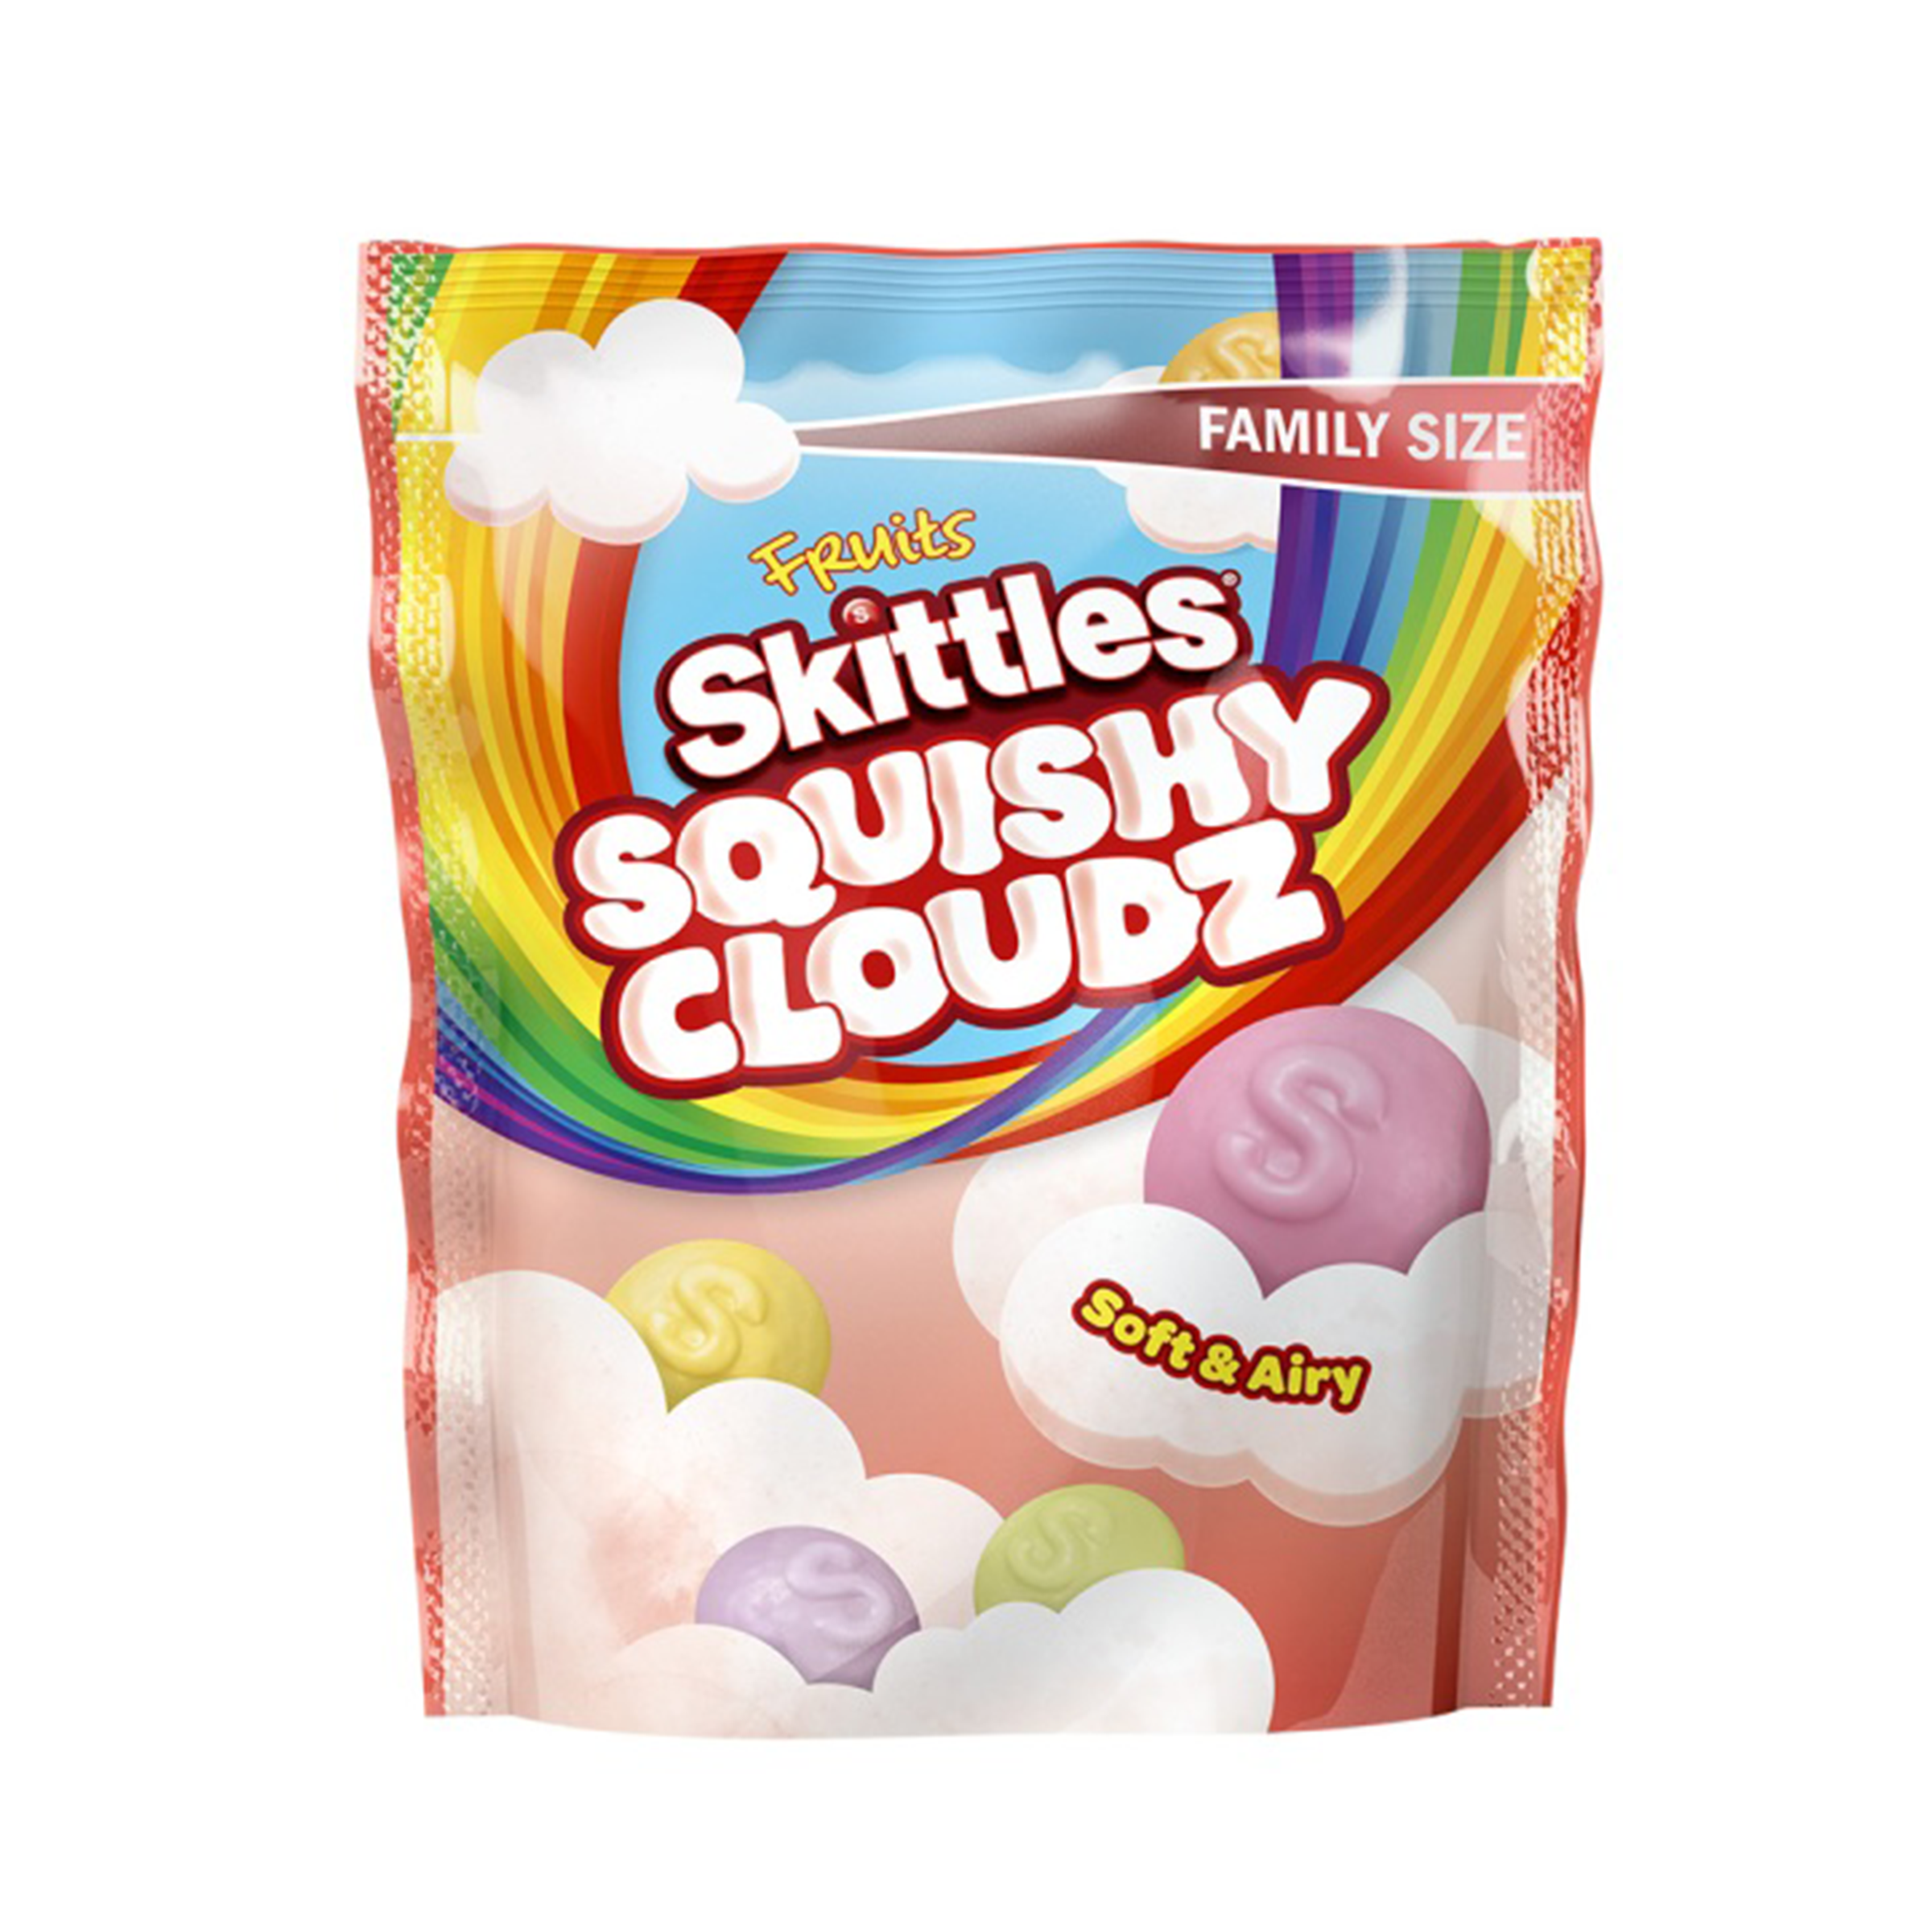 Skittles Squishy Cloudz - UK